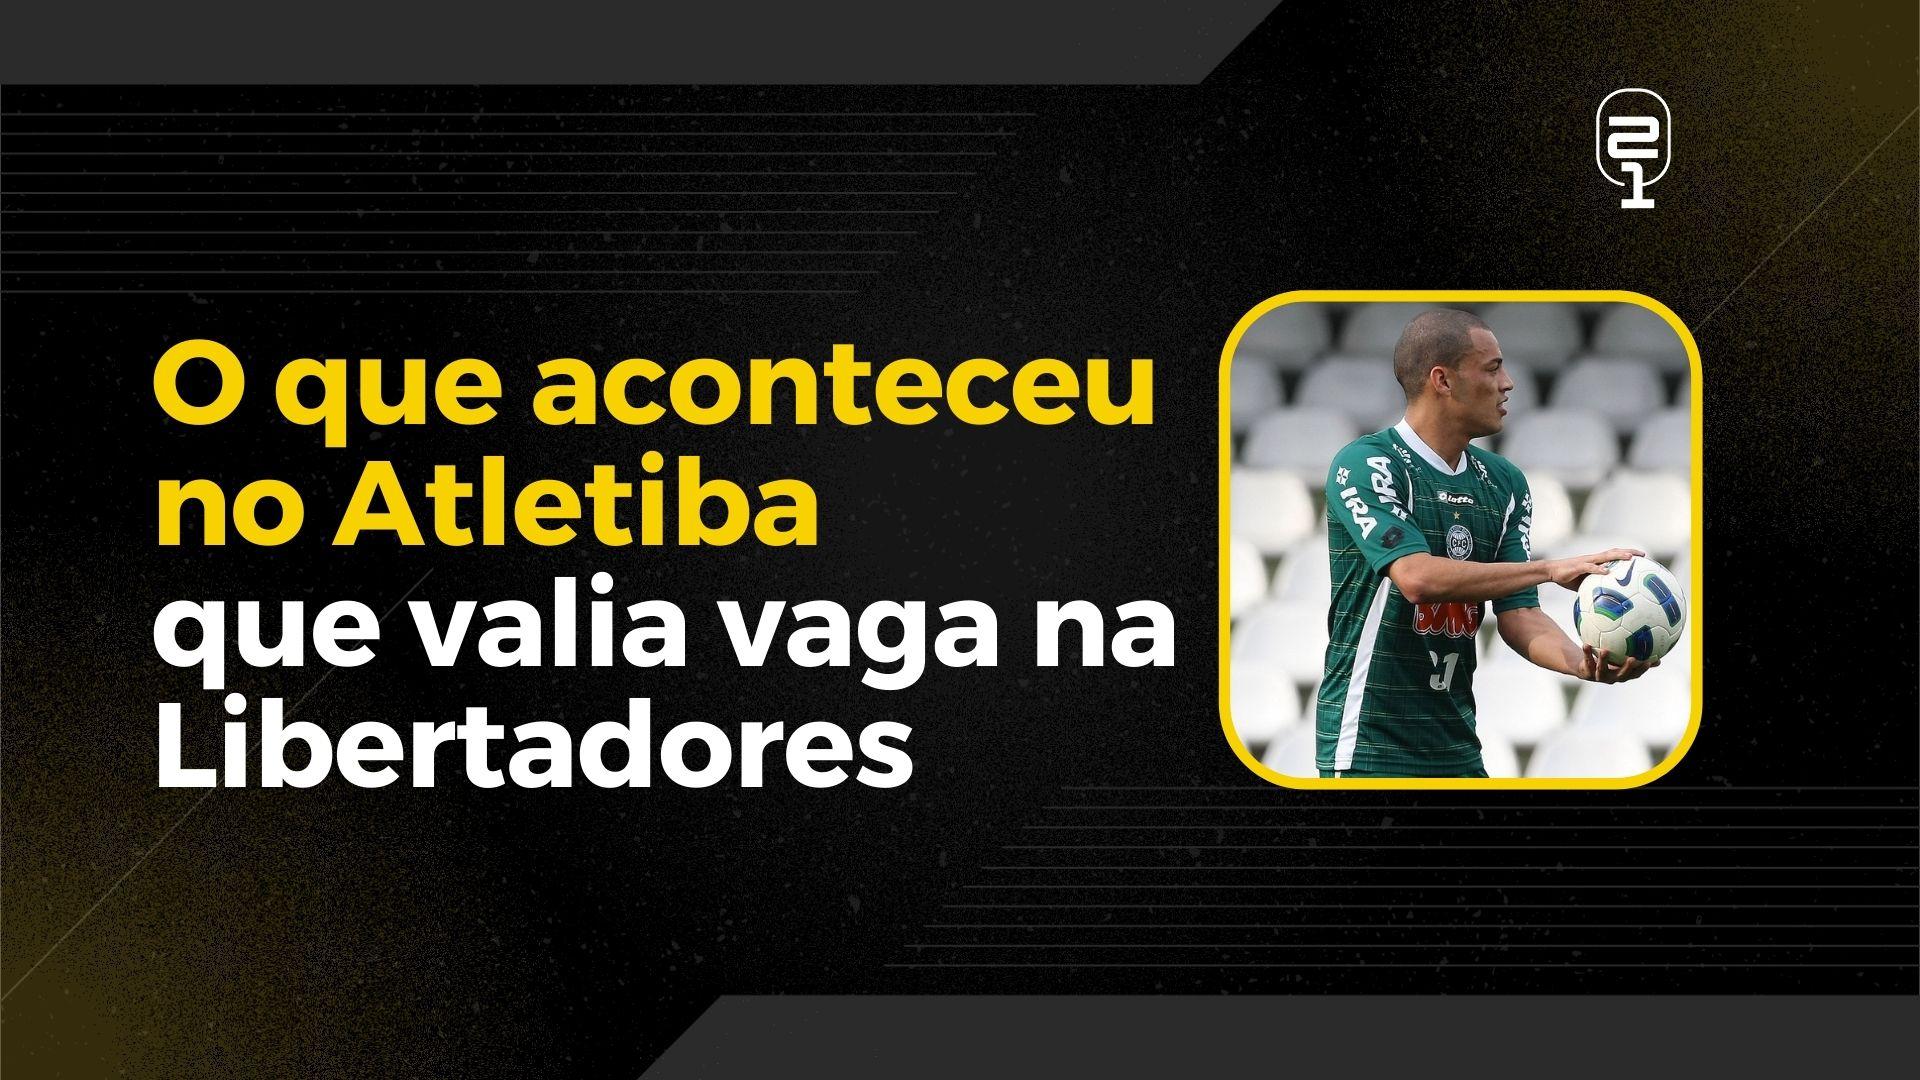 Leo Gago relembrou o último jogo pelo Coritiba, que valia Libertadores.